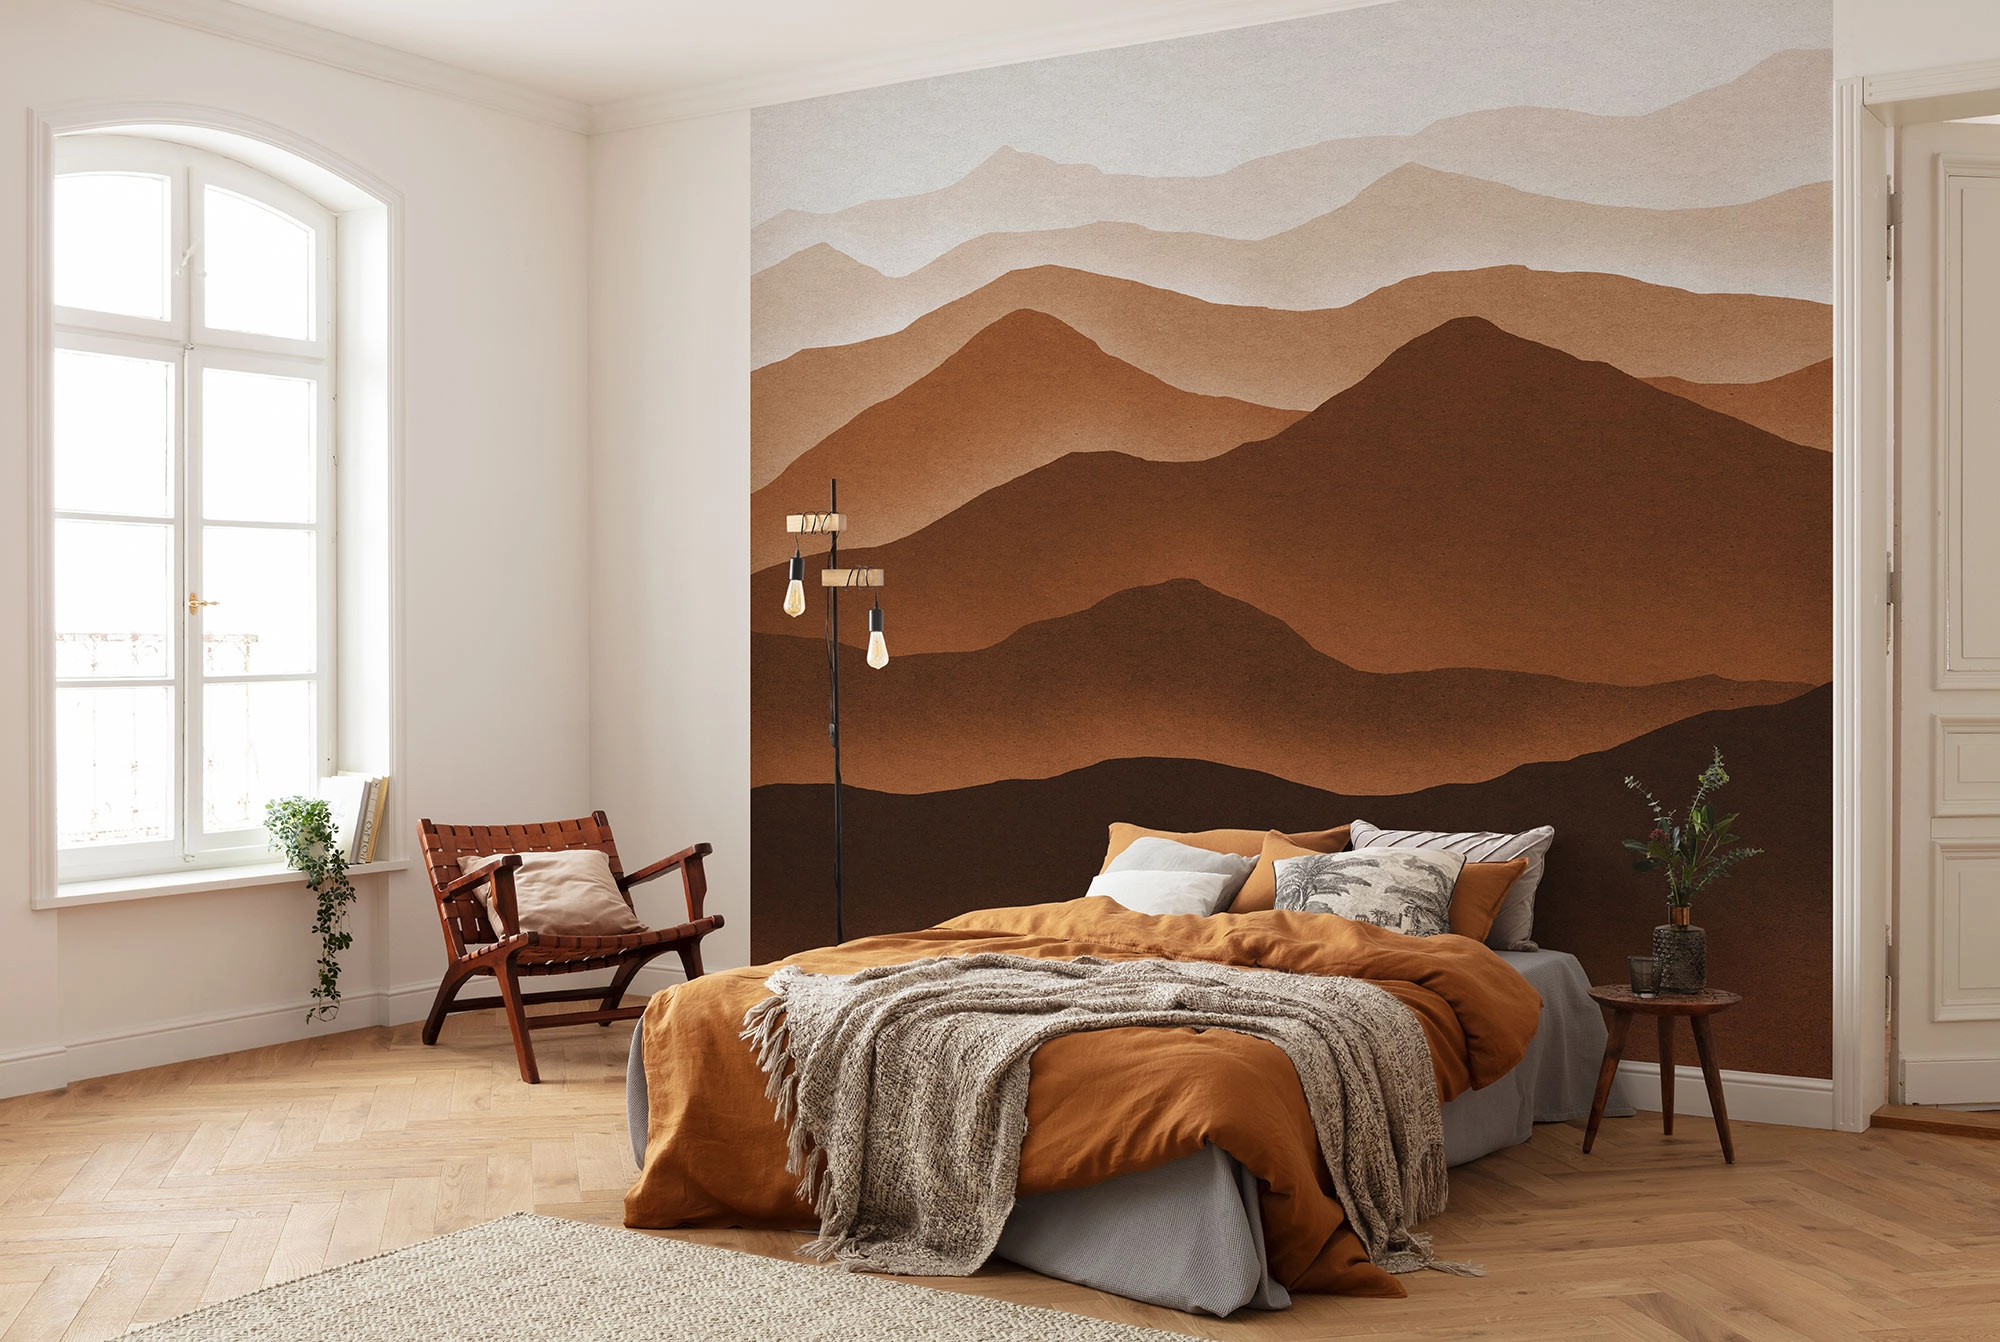 Fali poszter barna stilizált hegyvonulat mintával